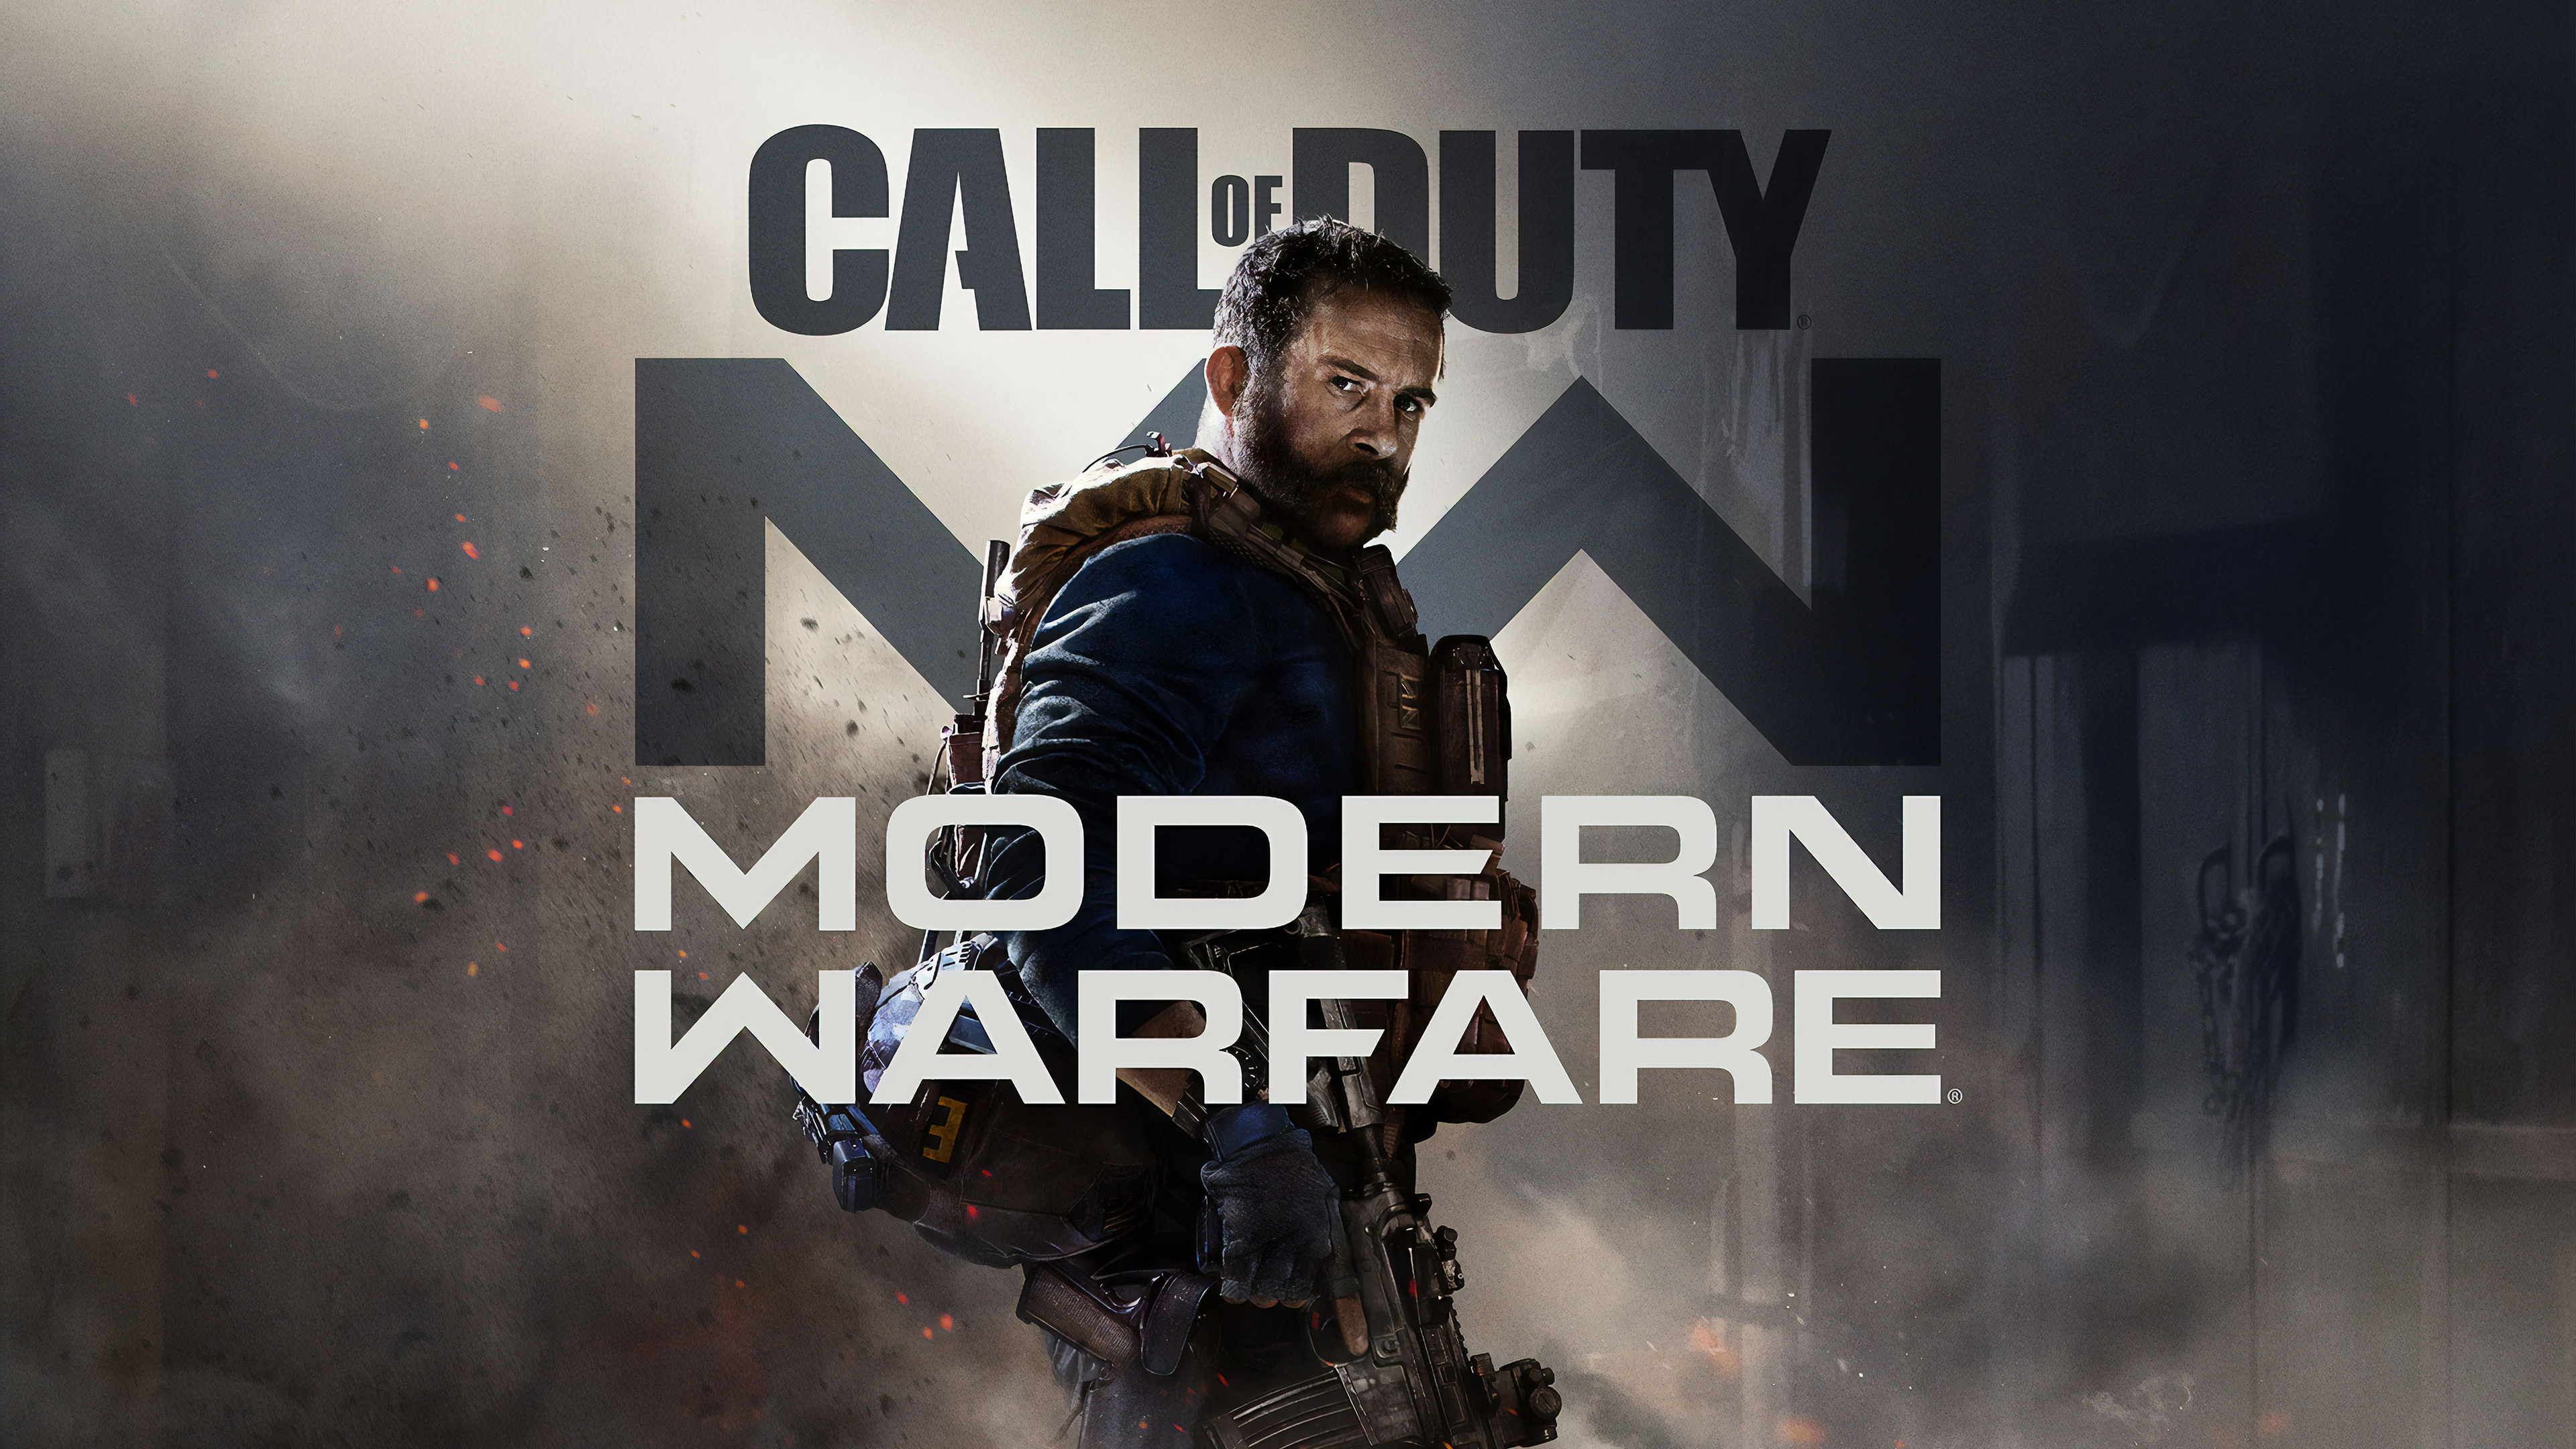 Call of Duty Modern Warfare, Call of Duty 4-modern Warfare, Movie, Pc-Spiel, Shooter-Spiel. Wallpaper in 3840x2160 Resolution